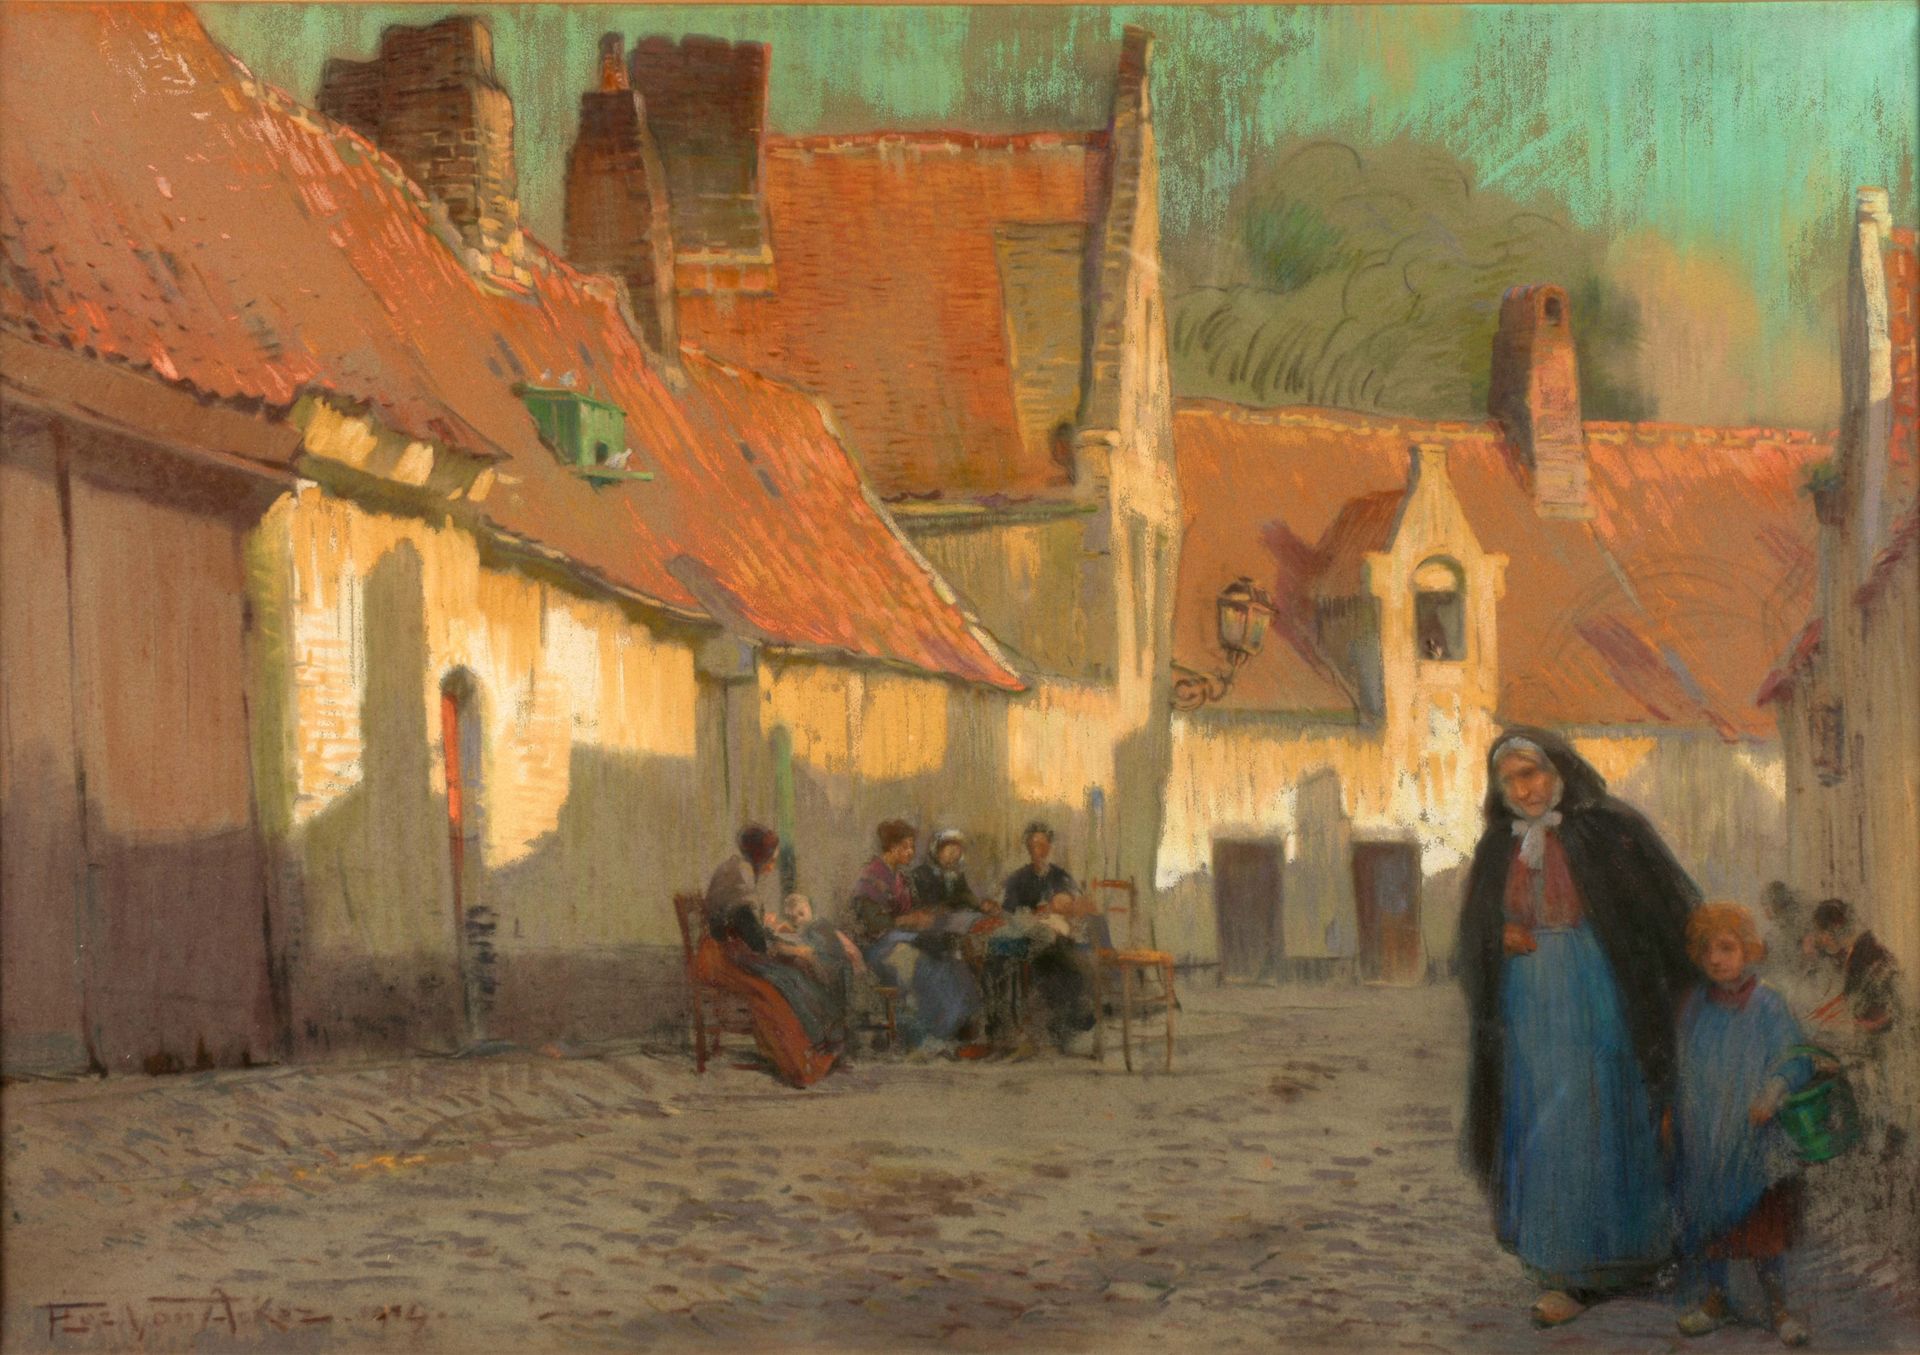 VAN ACKER, Flori (1858-1940) Straatzicht met kantwerksters in Brugge

Pastello (&hellip;